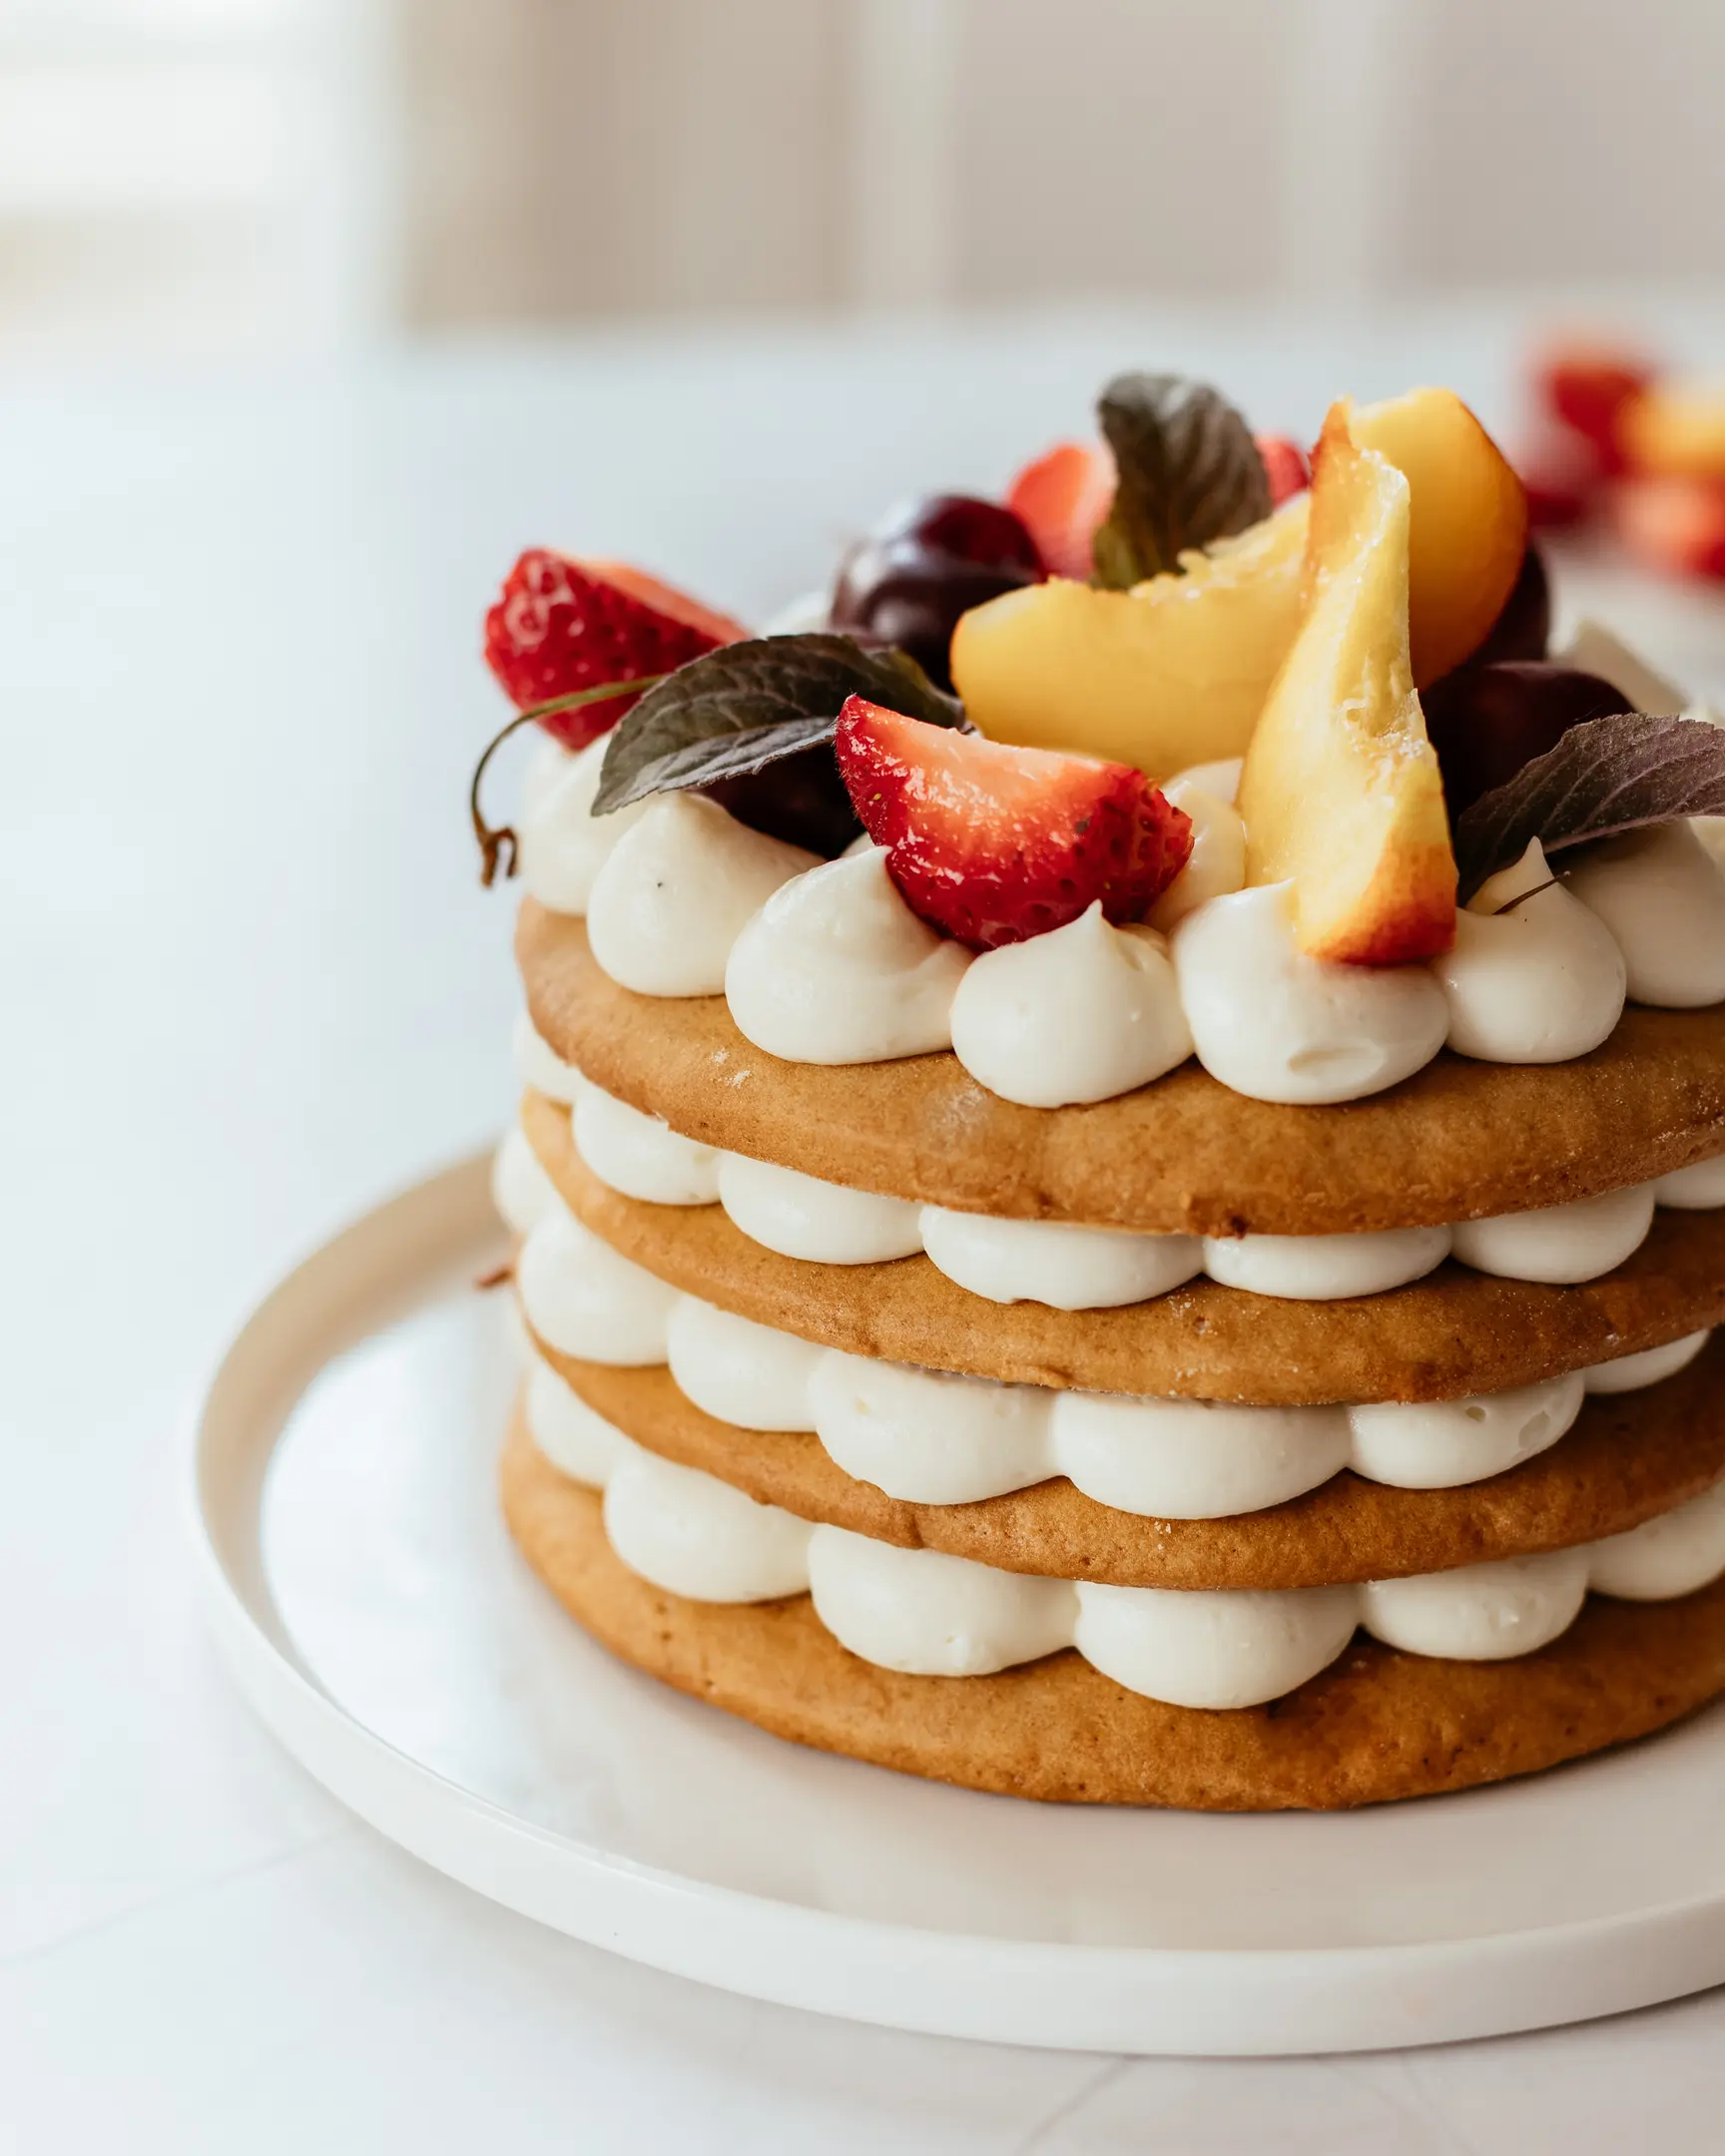 Слоеста медена торта. Слоеста медена торта, украсена с горски плодове, стои върху чиния.